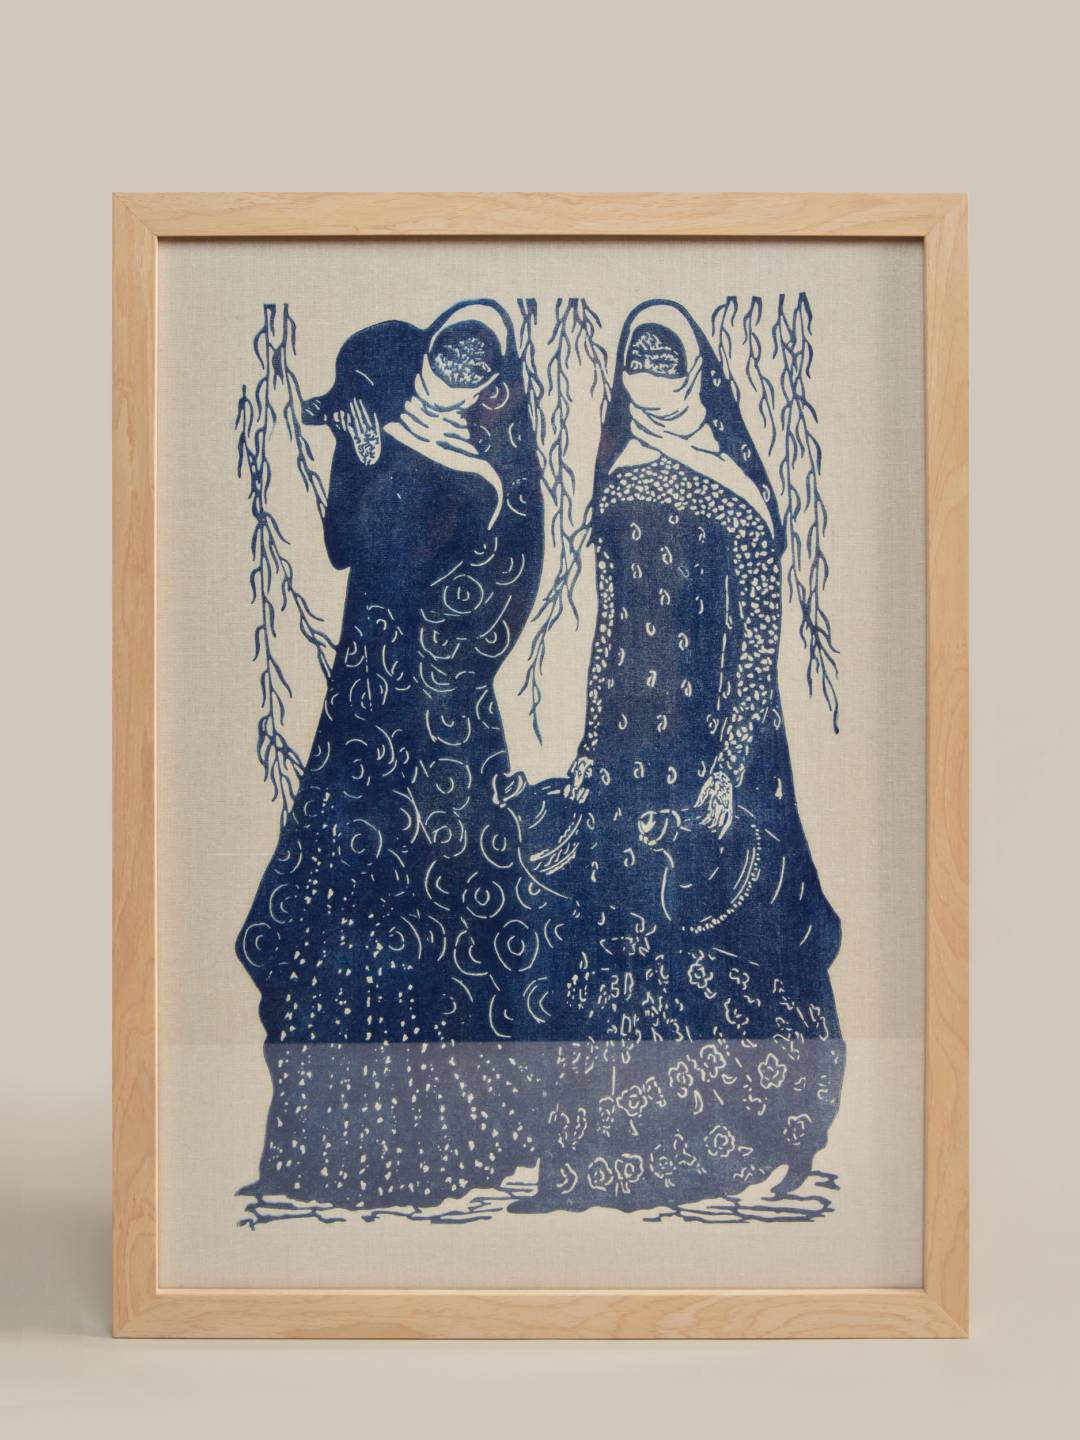 Maral Rahmanzadeh Linocut Hand Print "Our Girls Series" V2